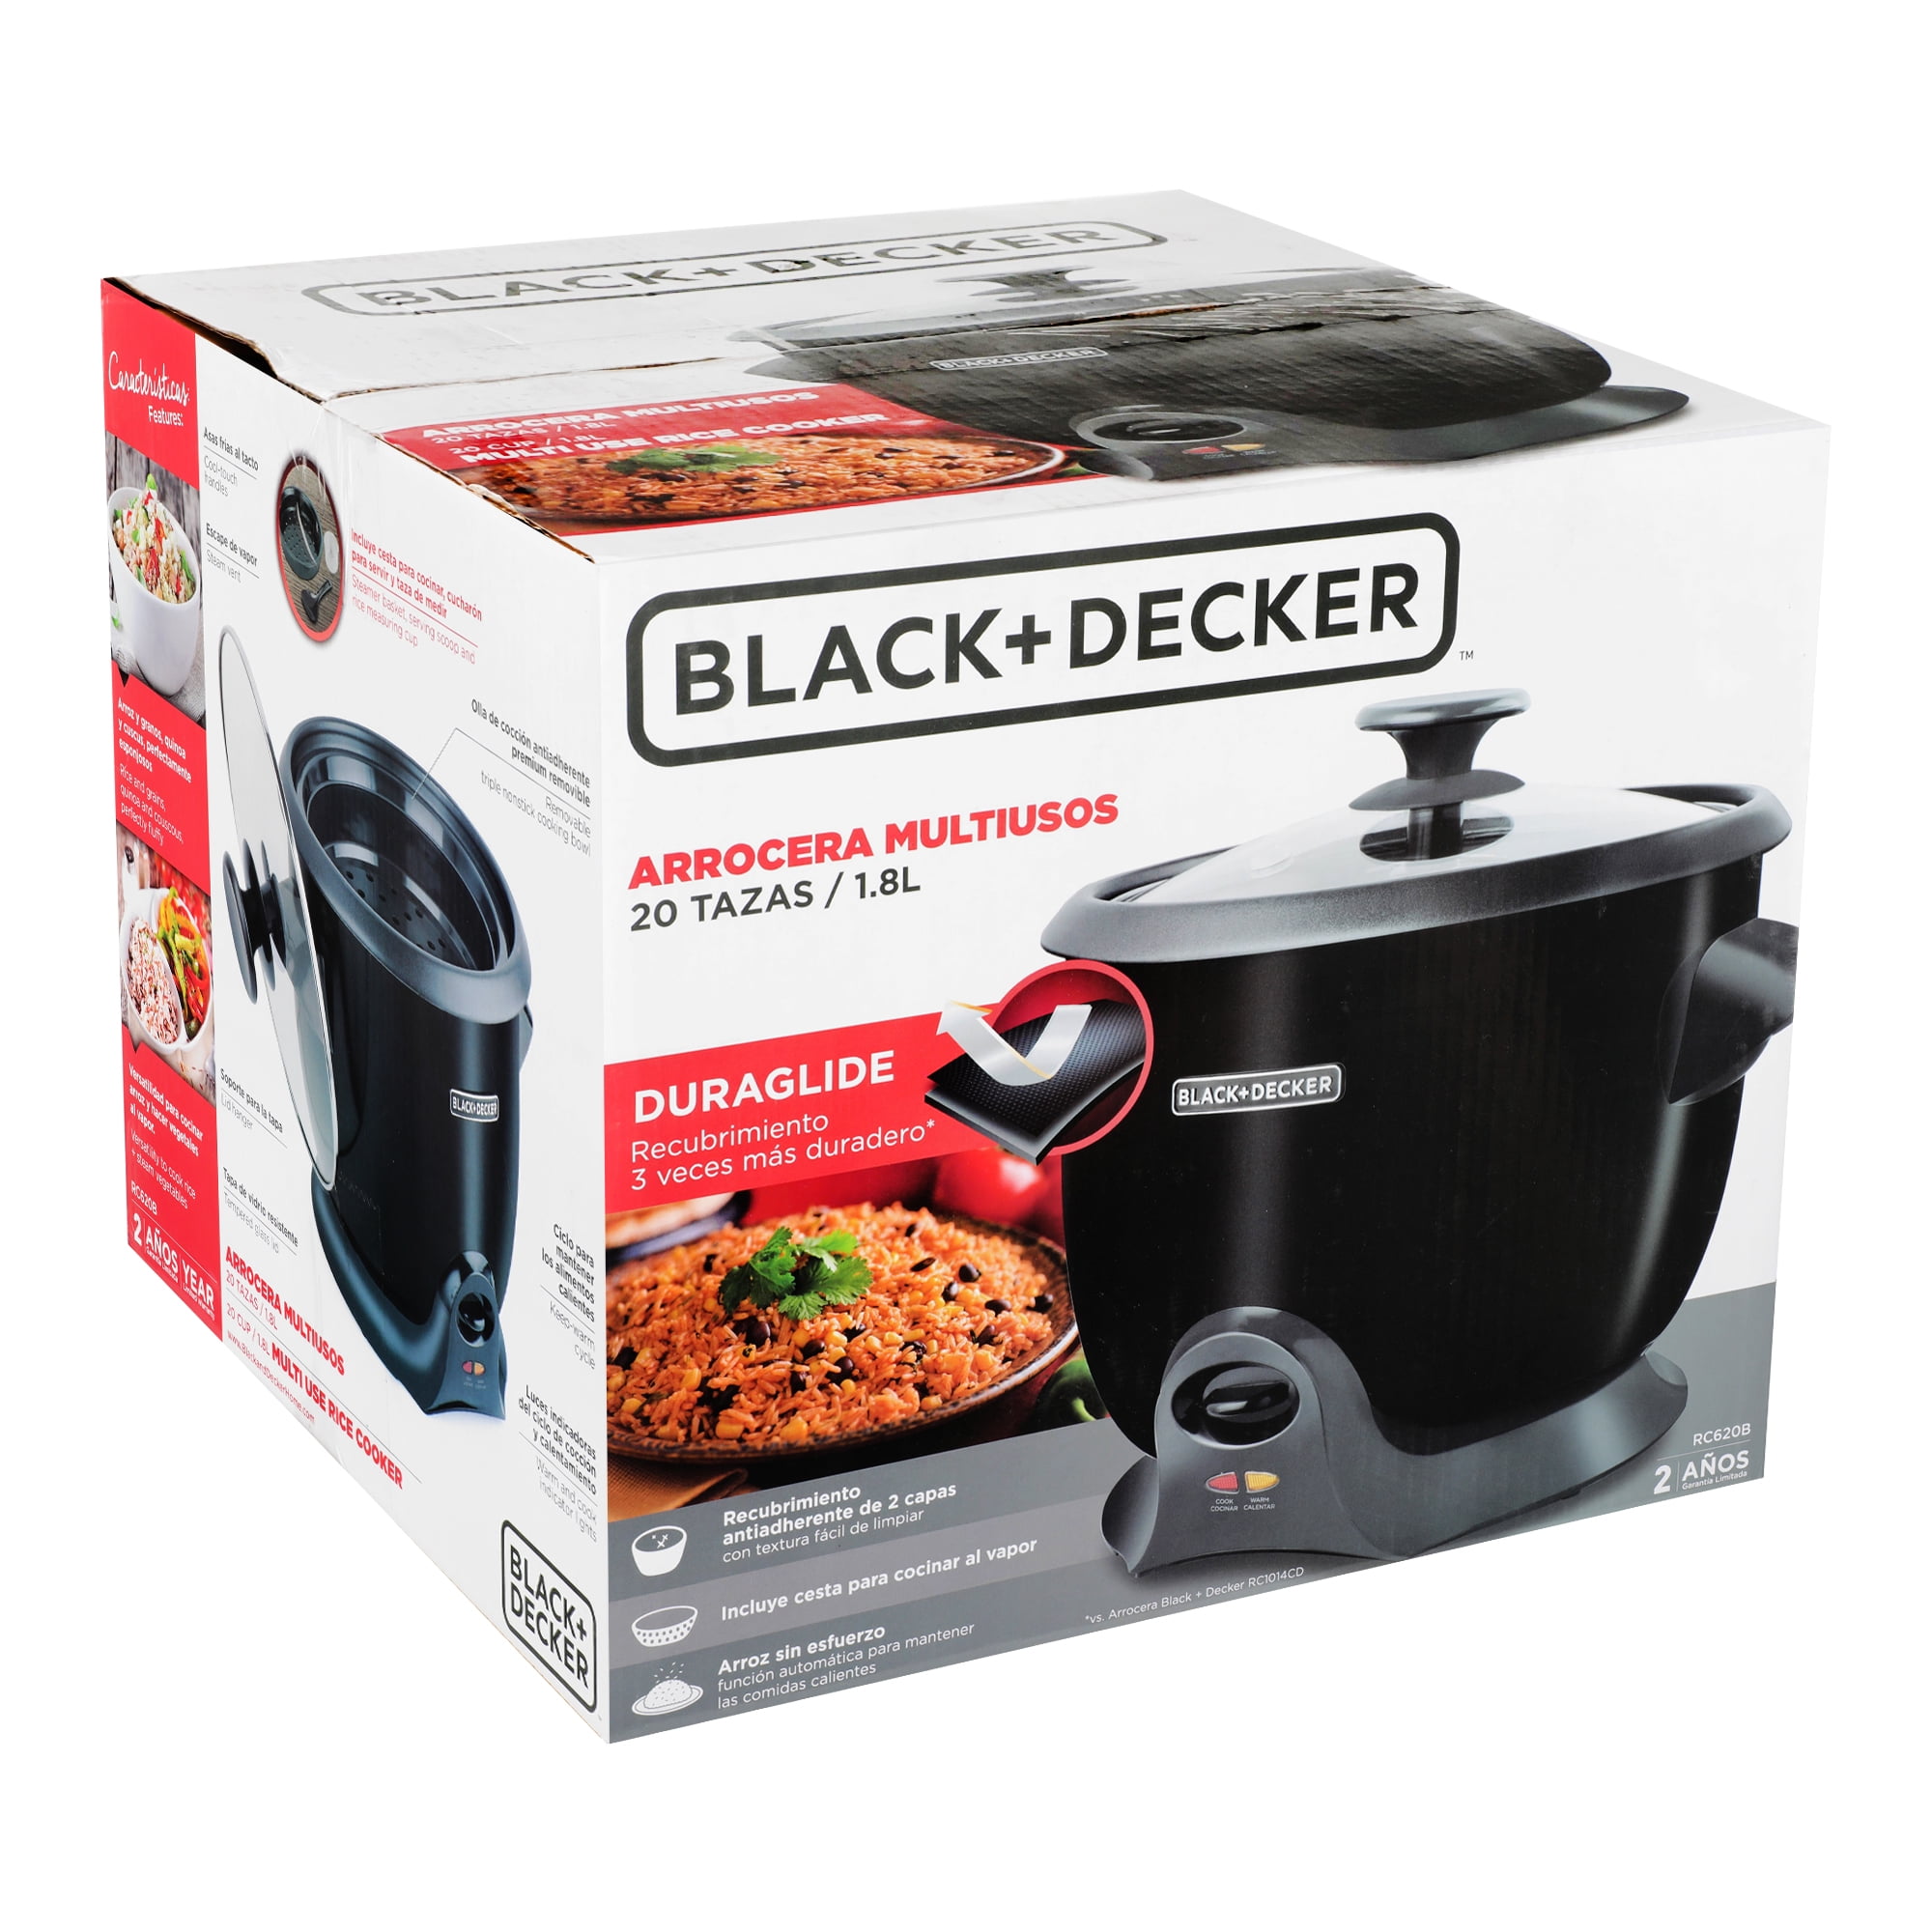 La Arrocera de 28 Tazas de BLACK+DECKER facilita crear arroz y más para  cenas de familia y reuniones grandes. La olla de cocción antiadherente  removible, By UNICA